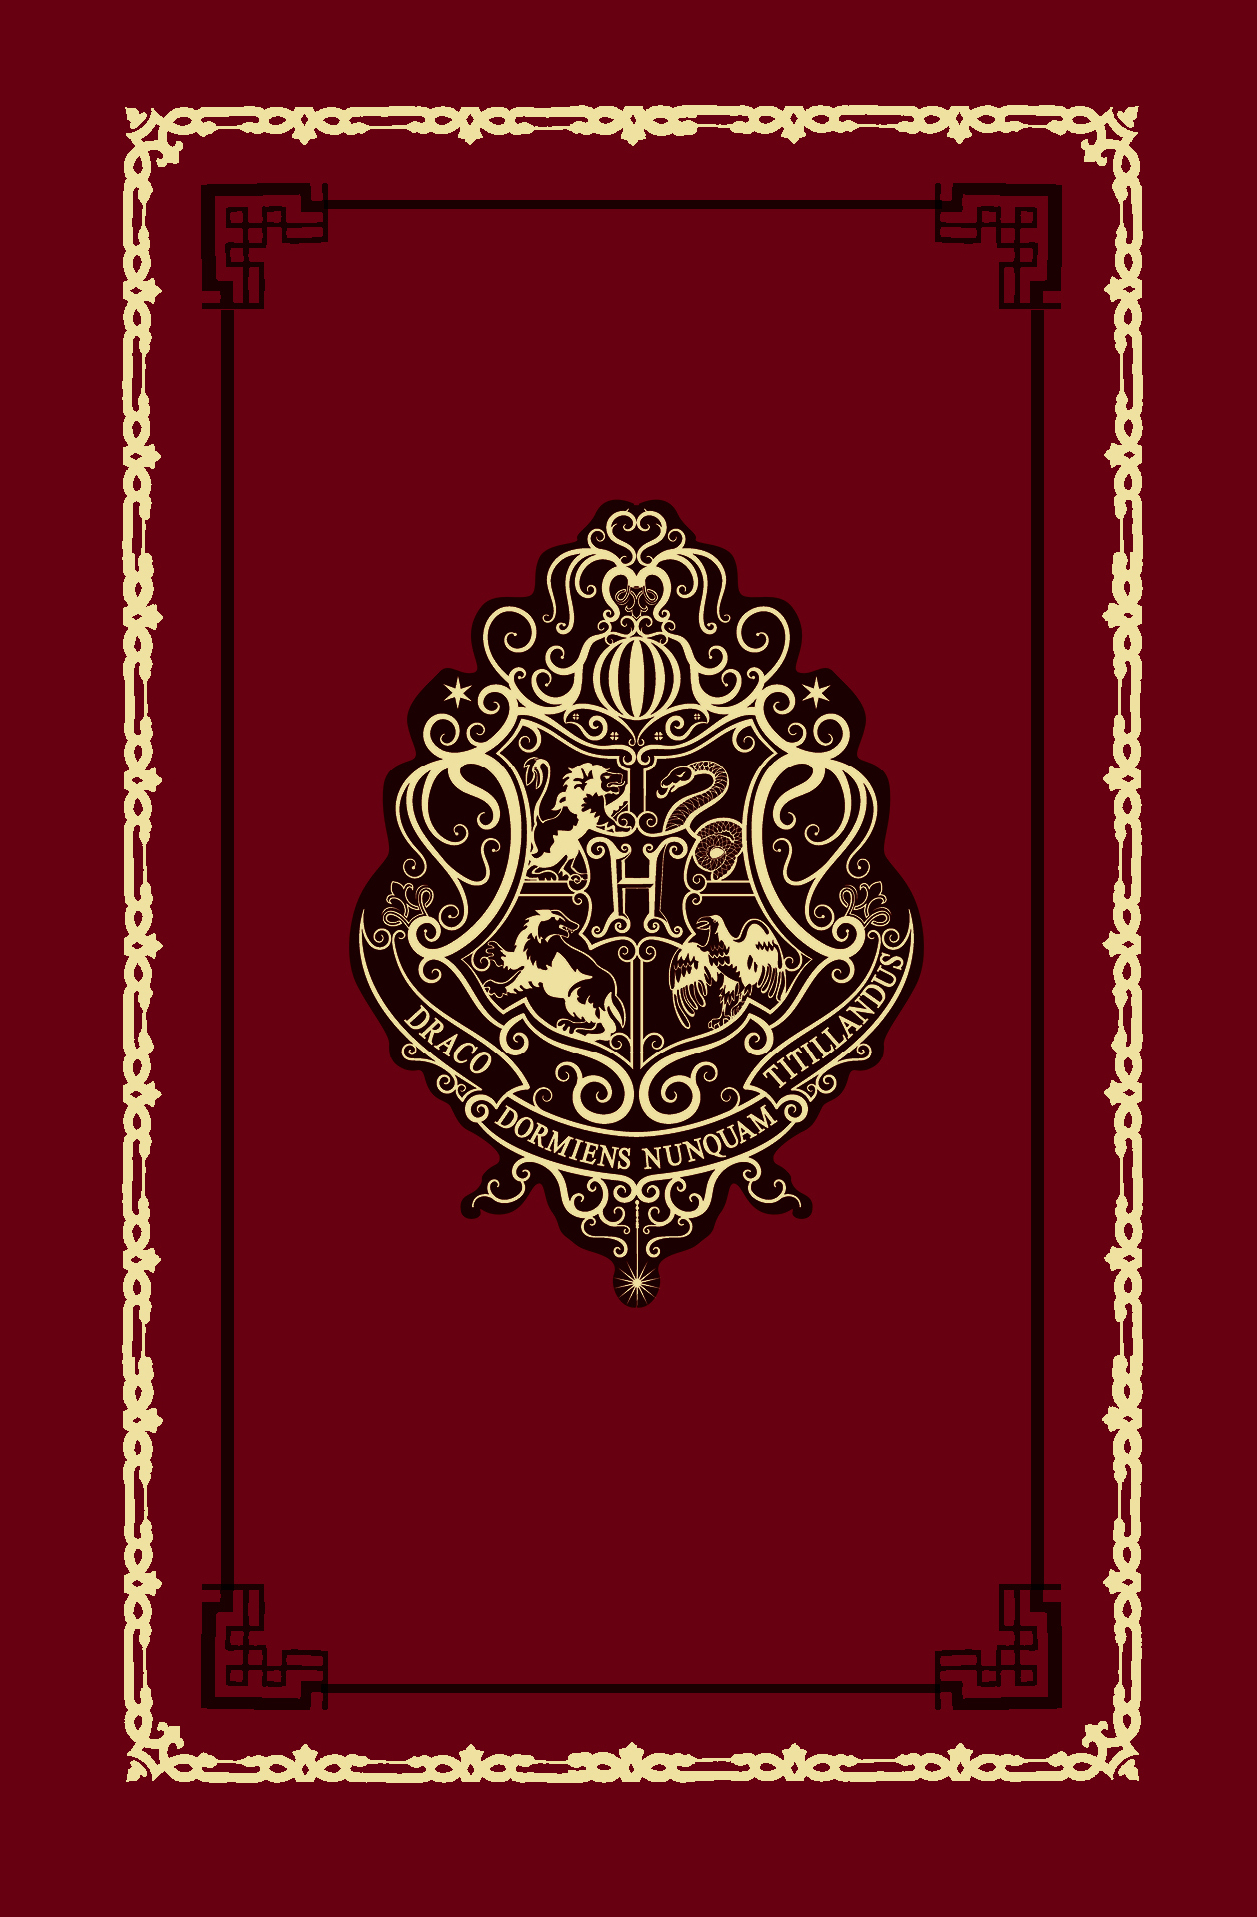 Блокнот. Гарри Поттер. Хогвартс (А5, 192 стр, цветной блок, обложка из красной кожи с золотым тиснением)